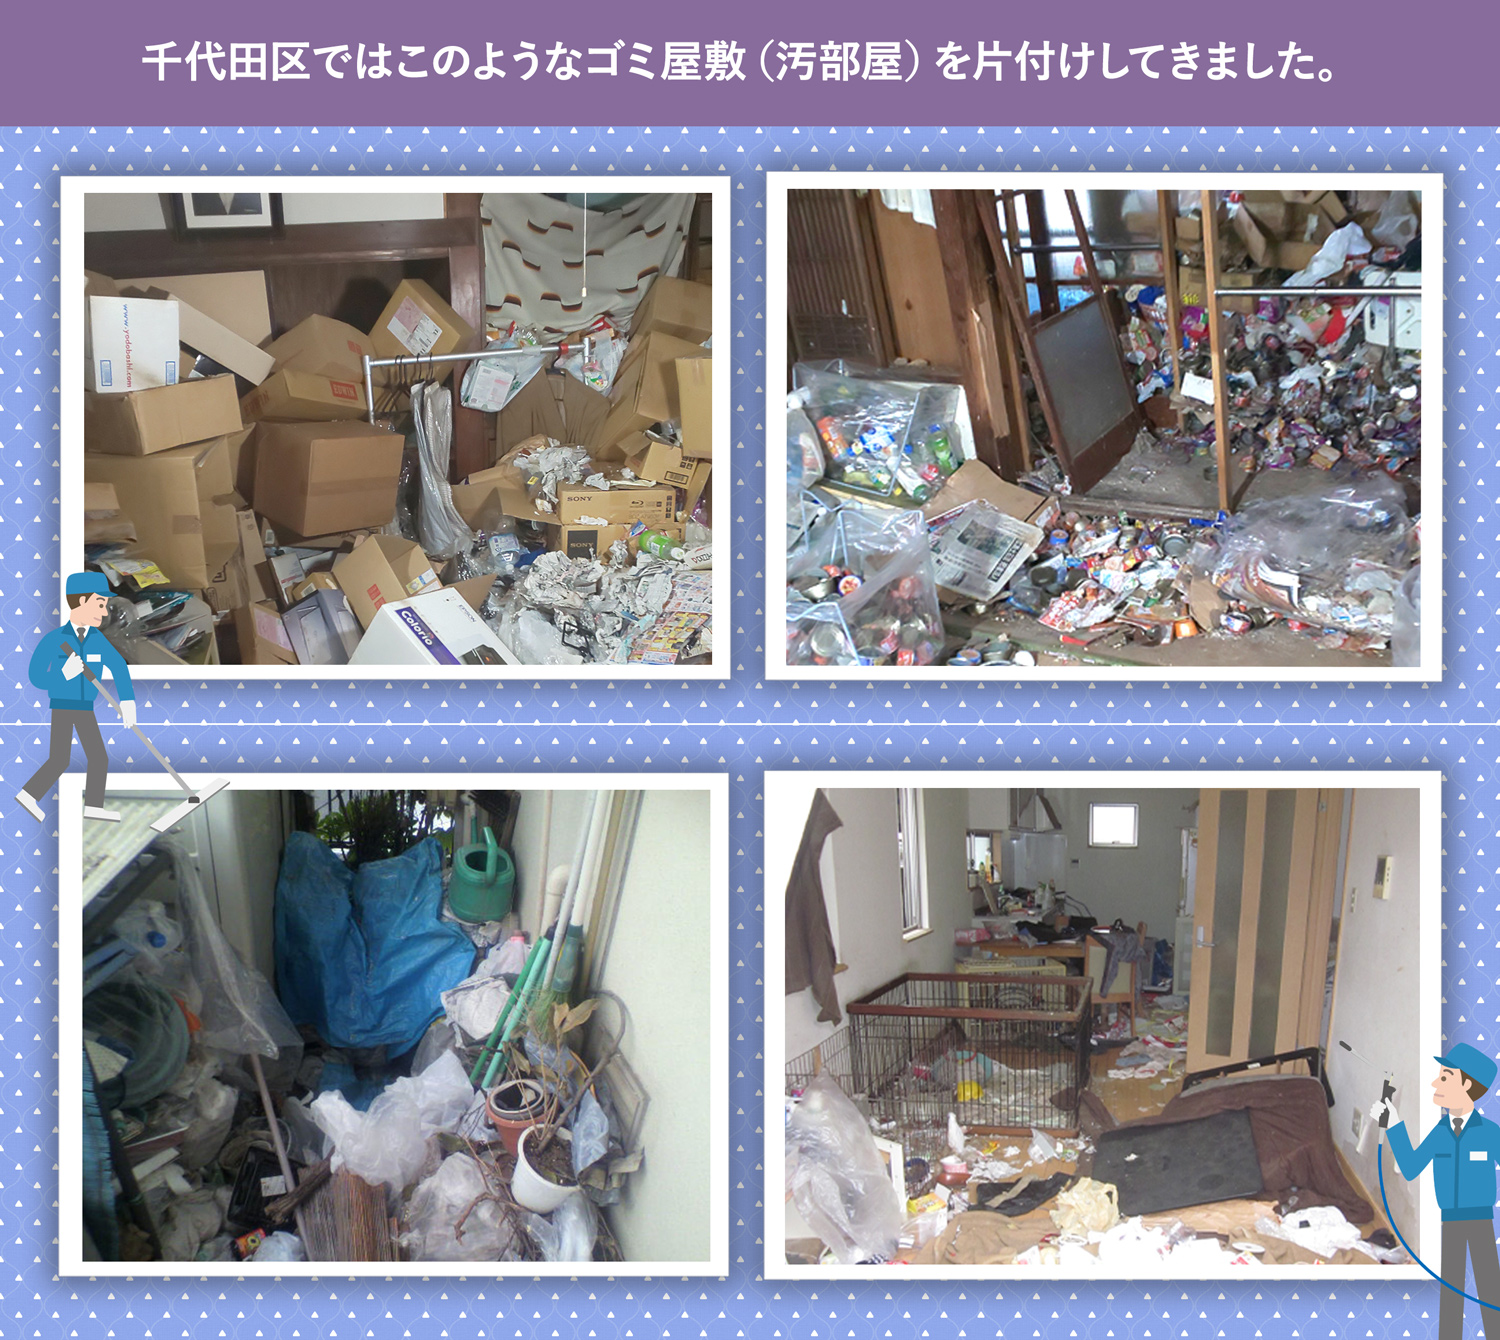 千代田区で行ったで行ったごみ屋敷・汚部屋の片付けの一例